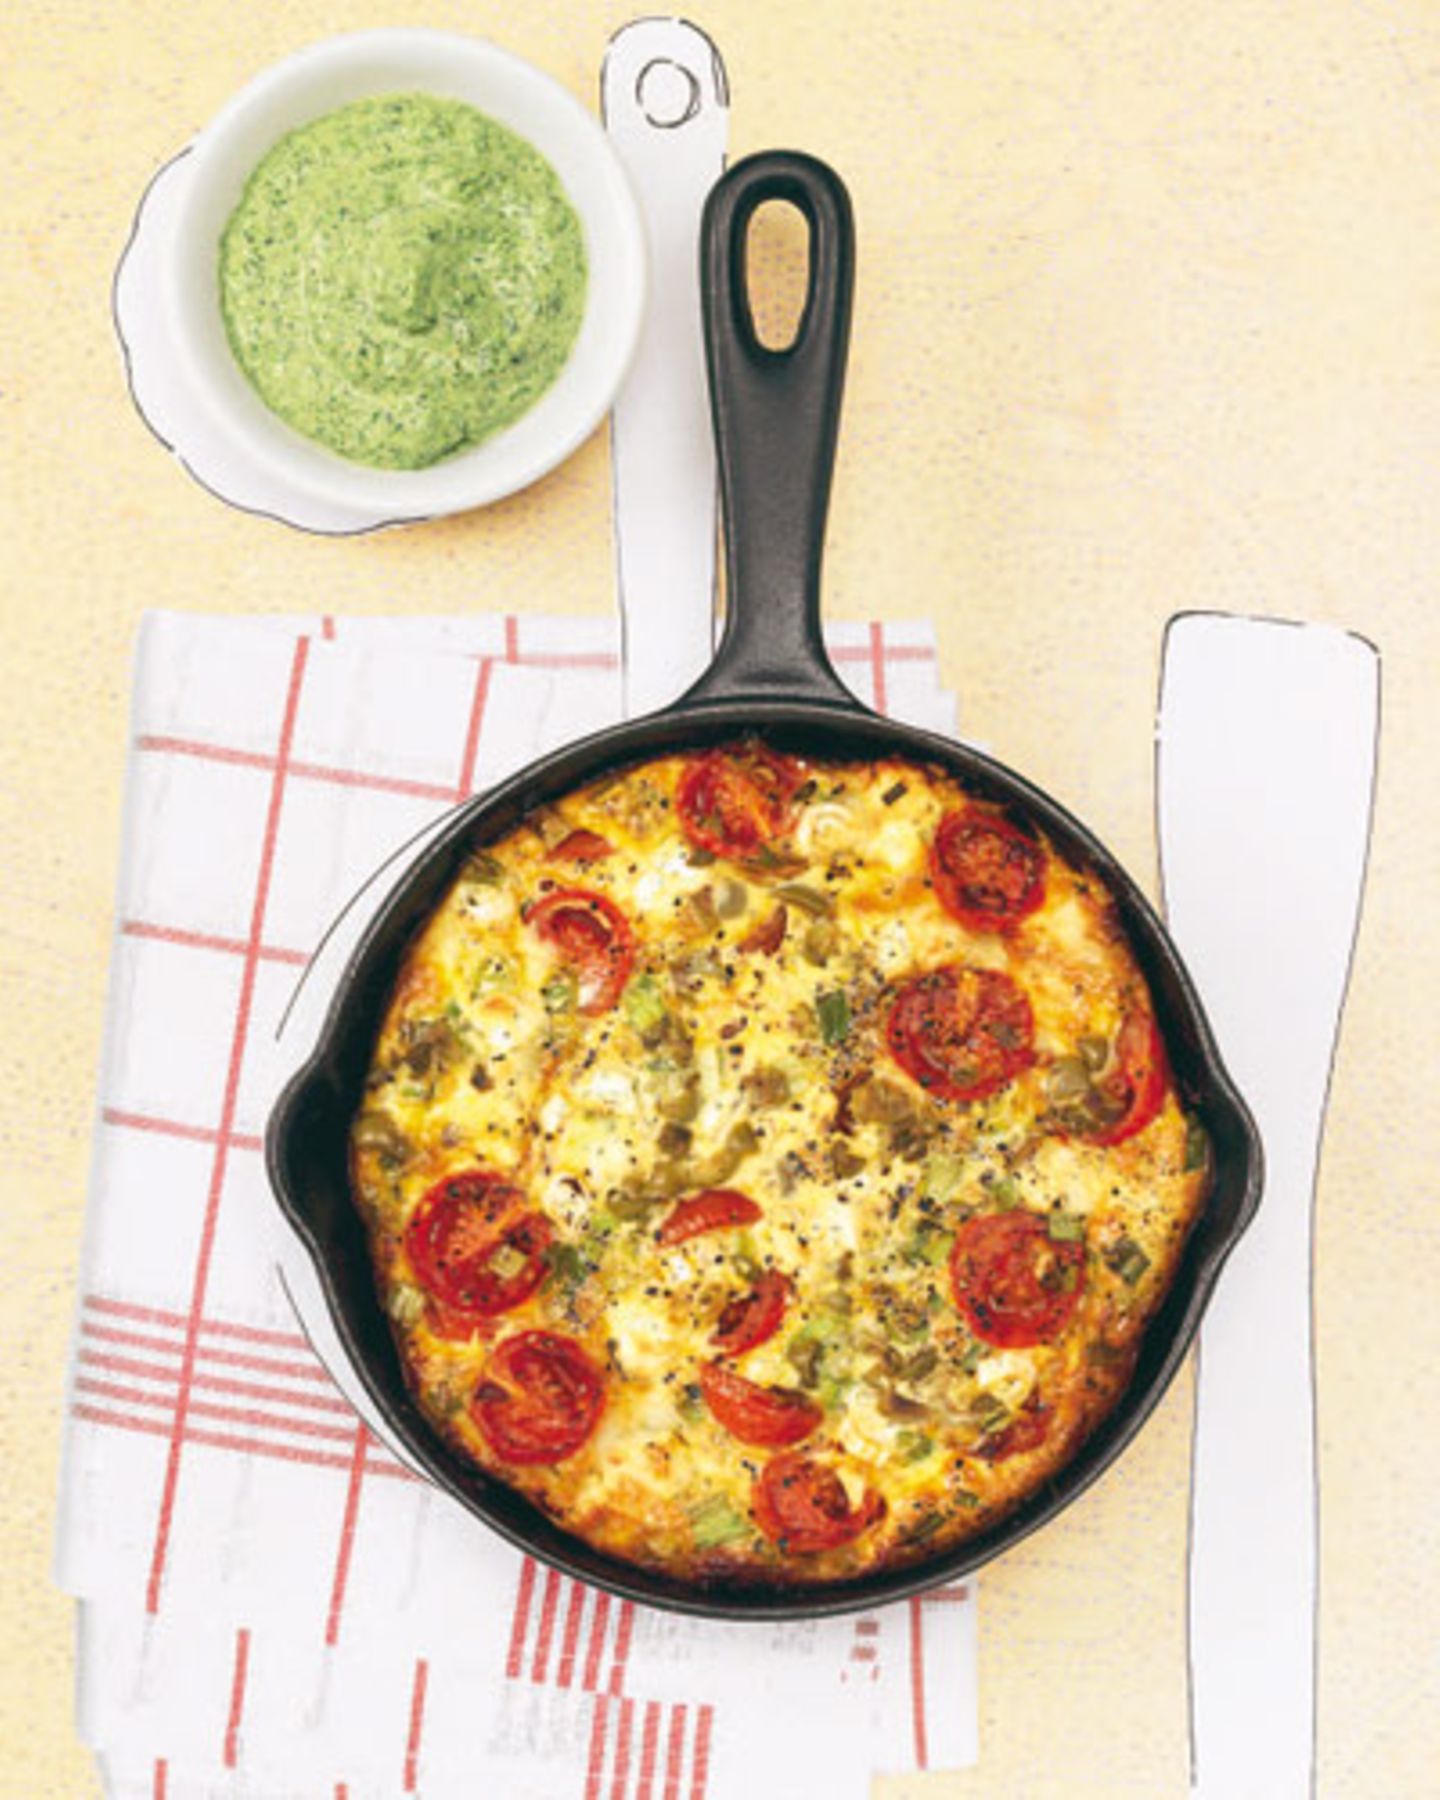 Tomaten, Lauchzwiebeln, Ei, Oliven und Ziegenkäse - das schmeckt gleich heiß aus der Pfanne! Die grüne Soße ist auch super zu Pasta und zu Pellkartoffeln. Zum Rezept: Tortilla mit Grüner Soße